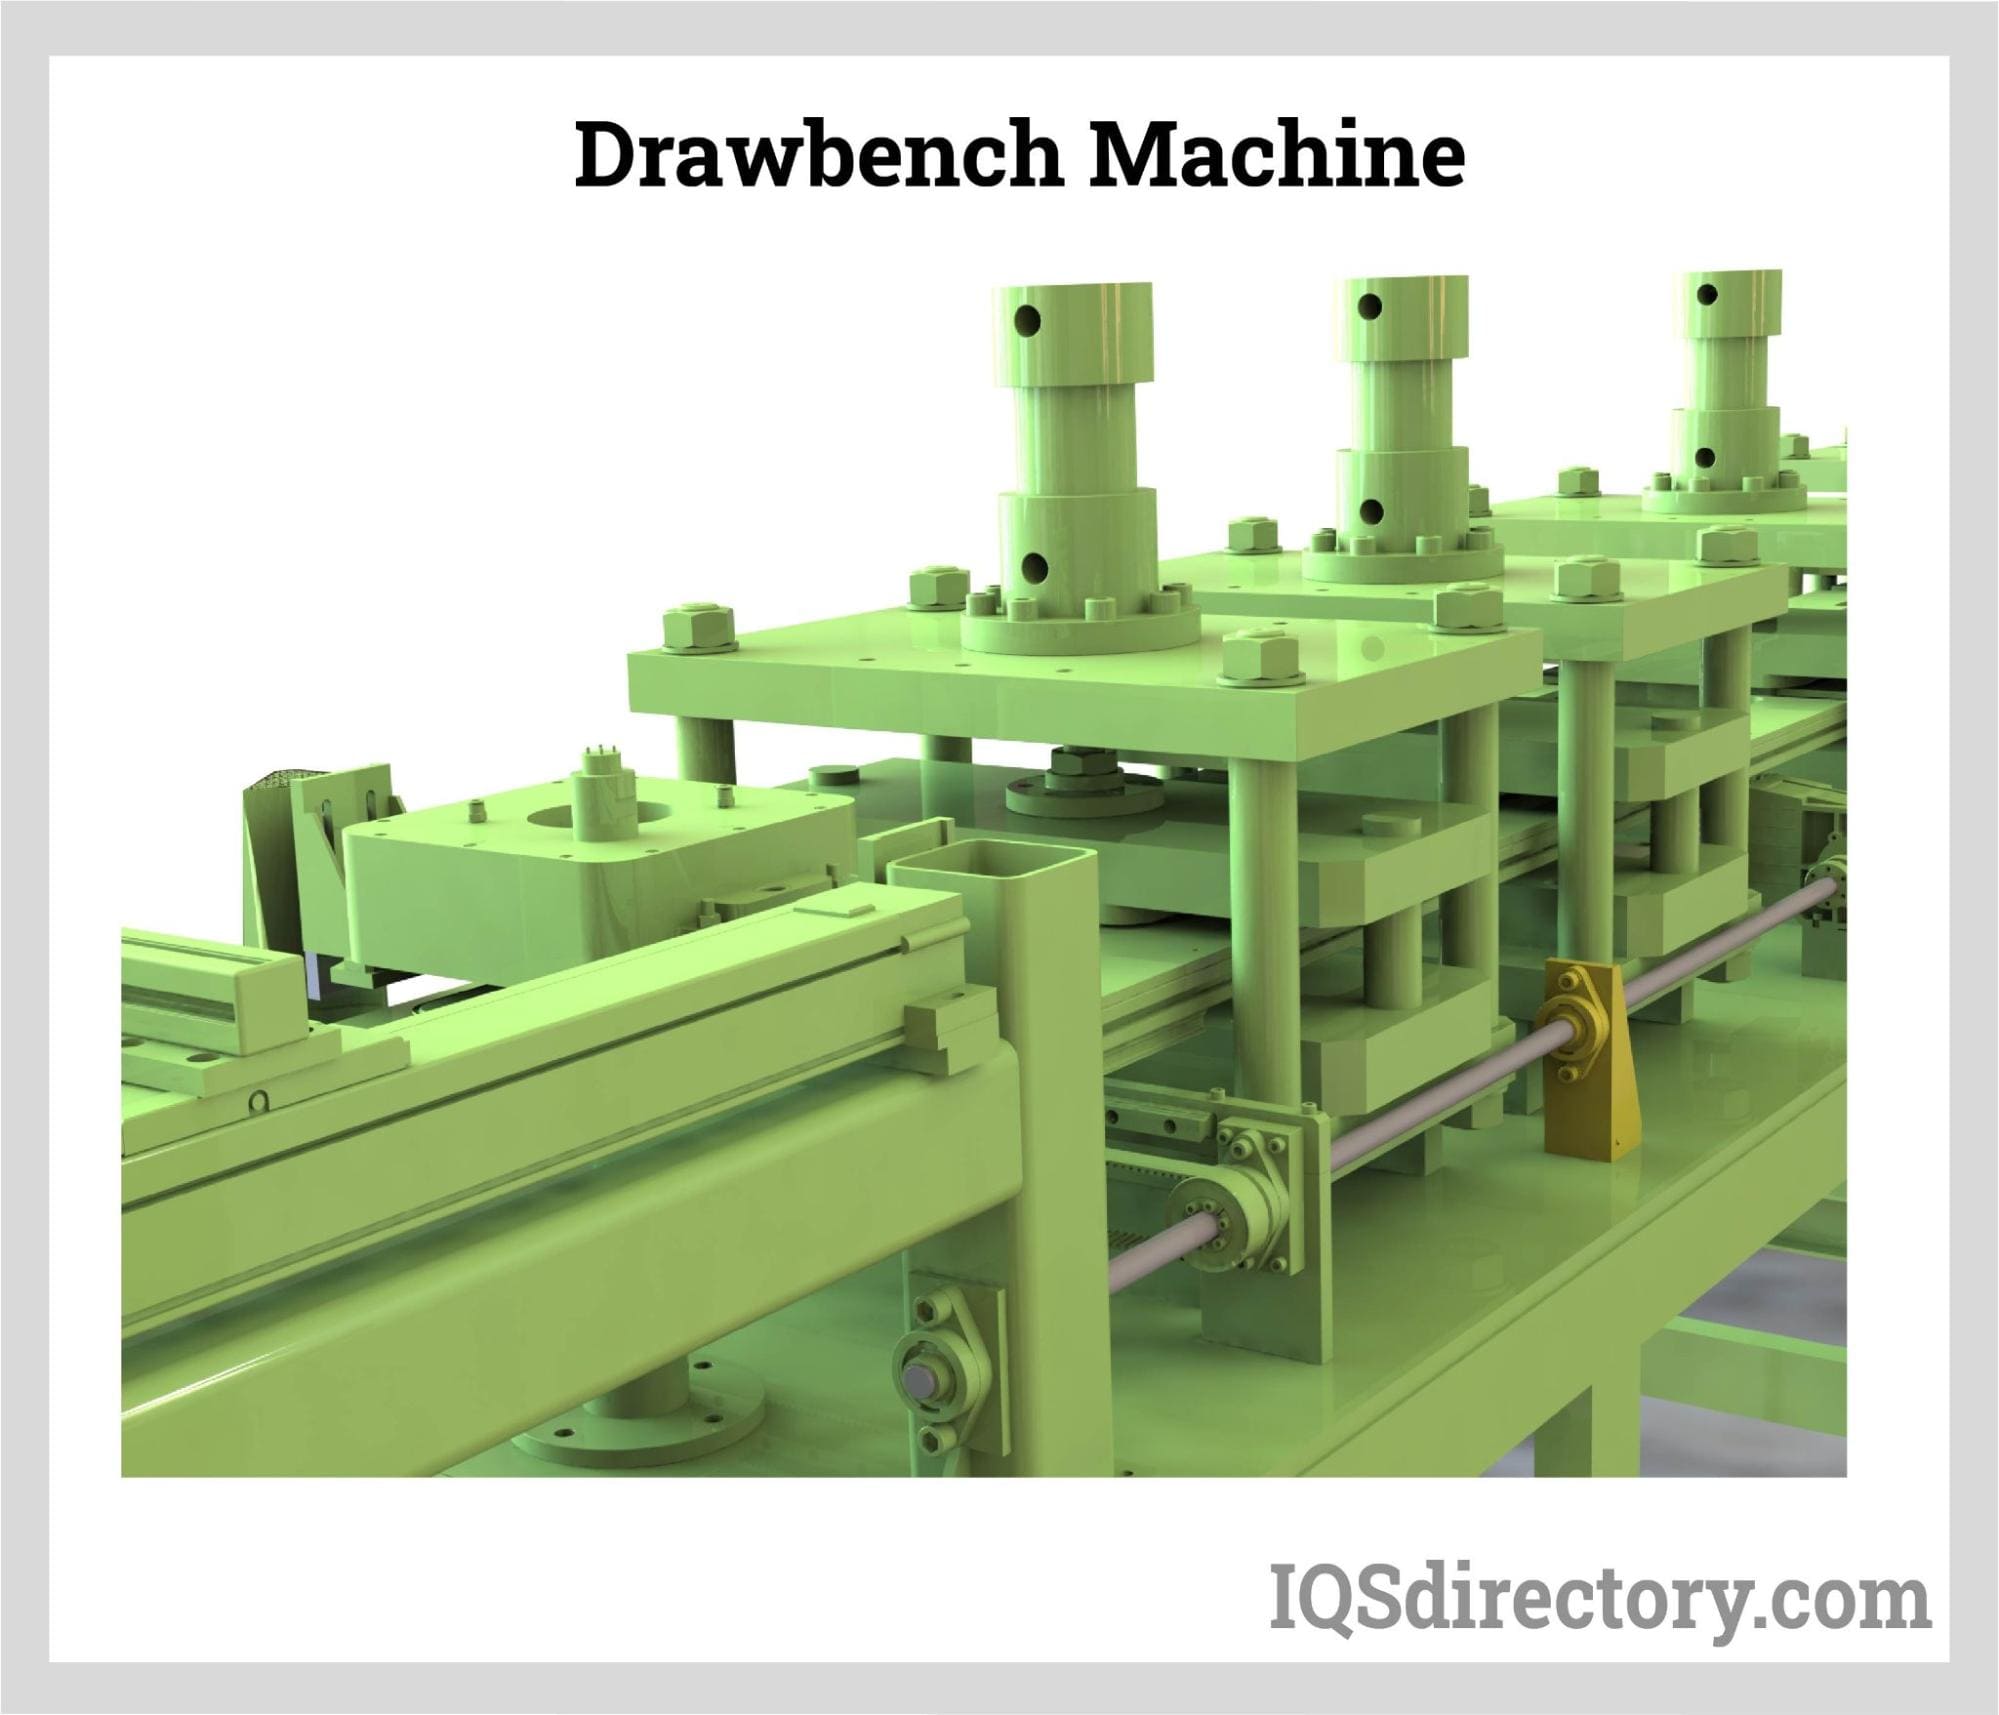 Drawbench Machine